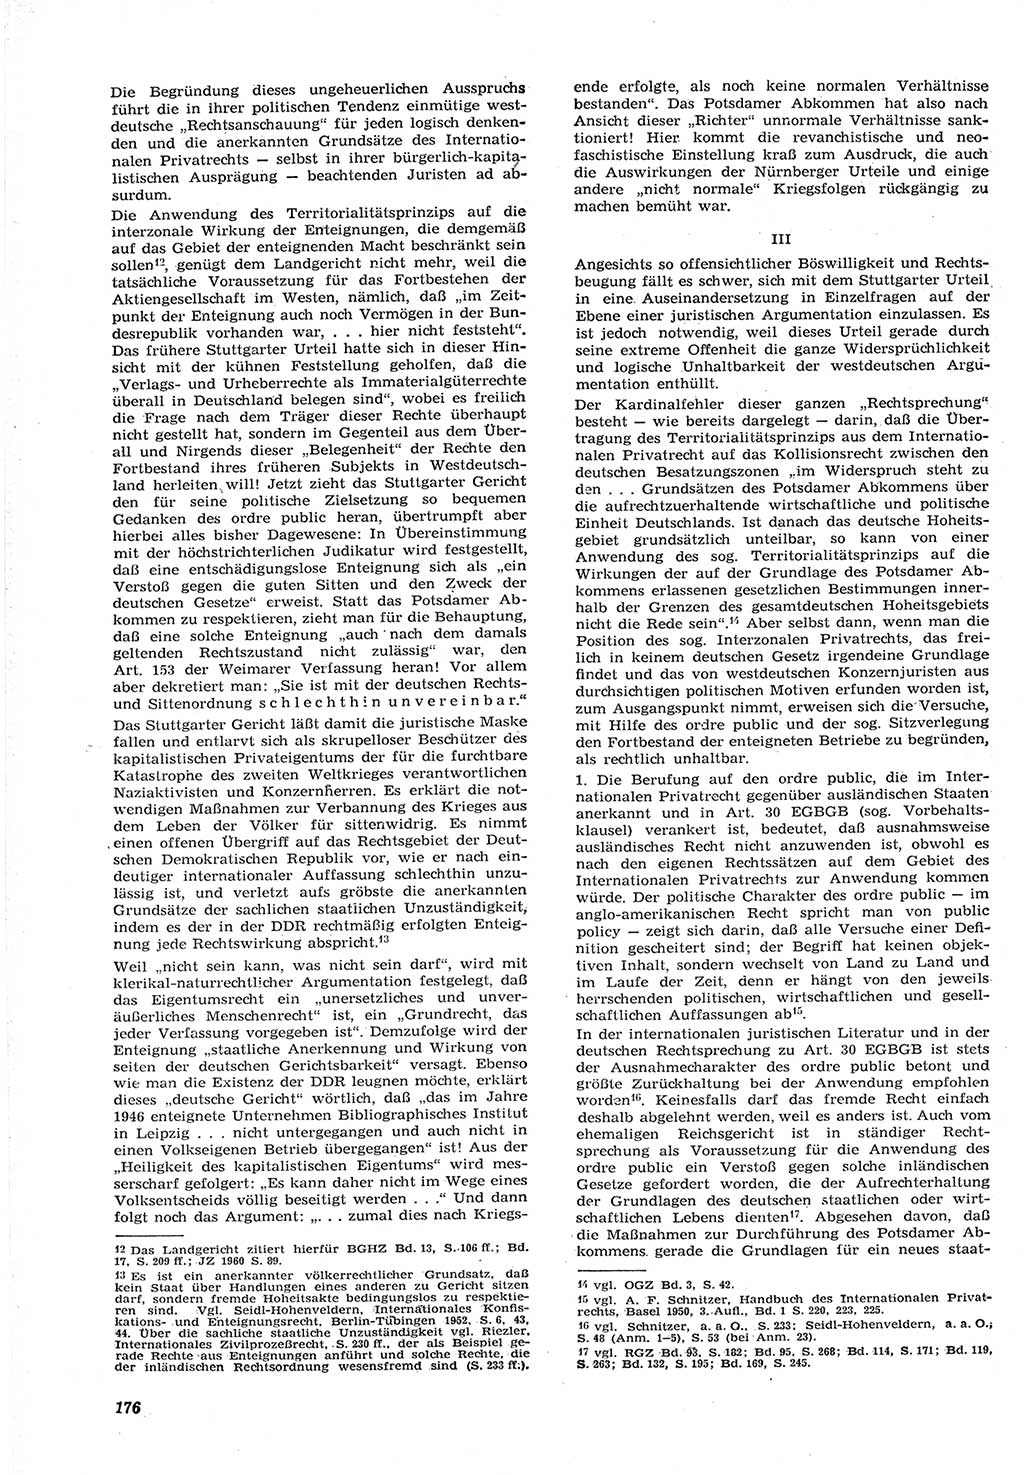 Neue Justiz (NJ), Zeitschrift für Recht und Rechtswissenschaft [Deutsche Demokratische Republik (DDR)], 15. Jahrgang 1961, Seite 176 (NJ DDR 1961, S. 176)